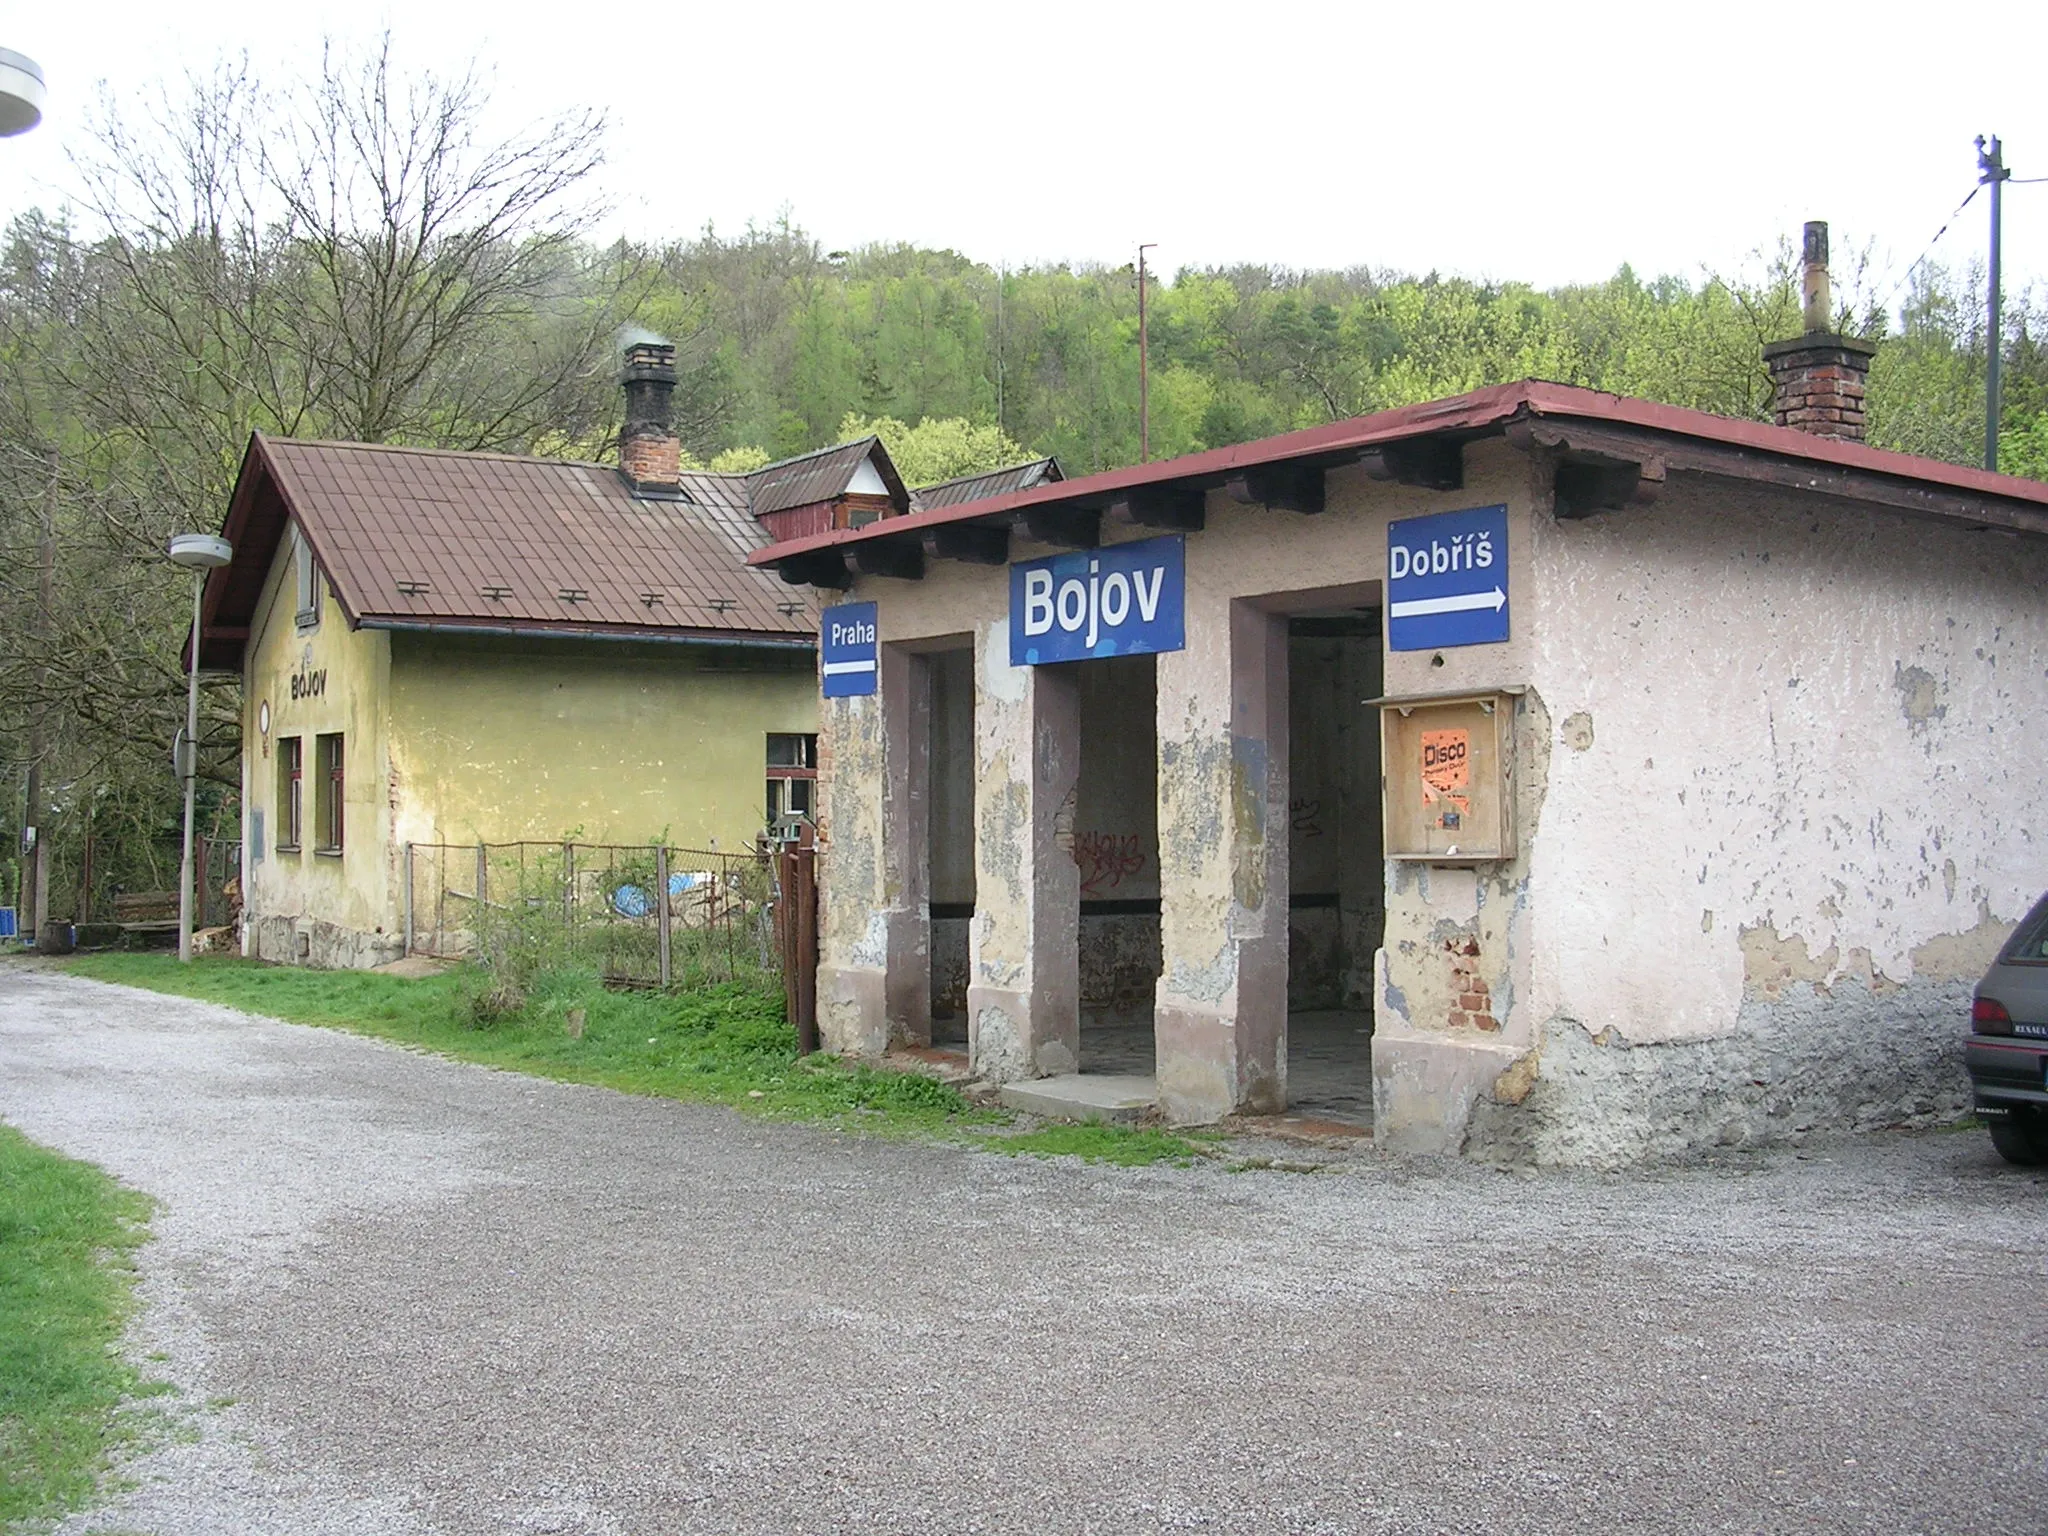 Photo showing: Čisovice, the Czech Republic. Train station Bojov.